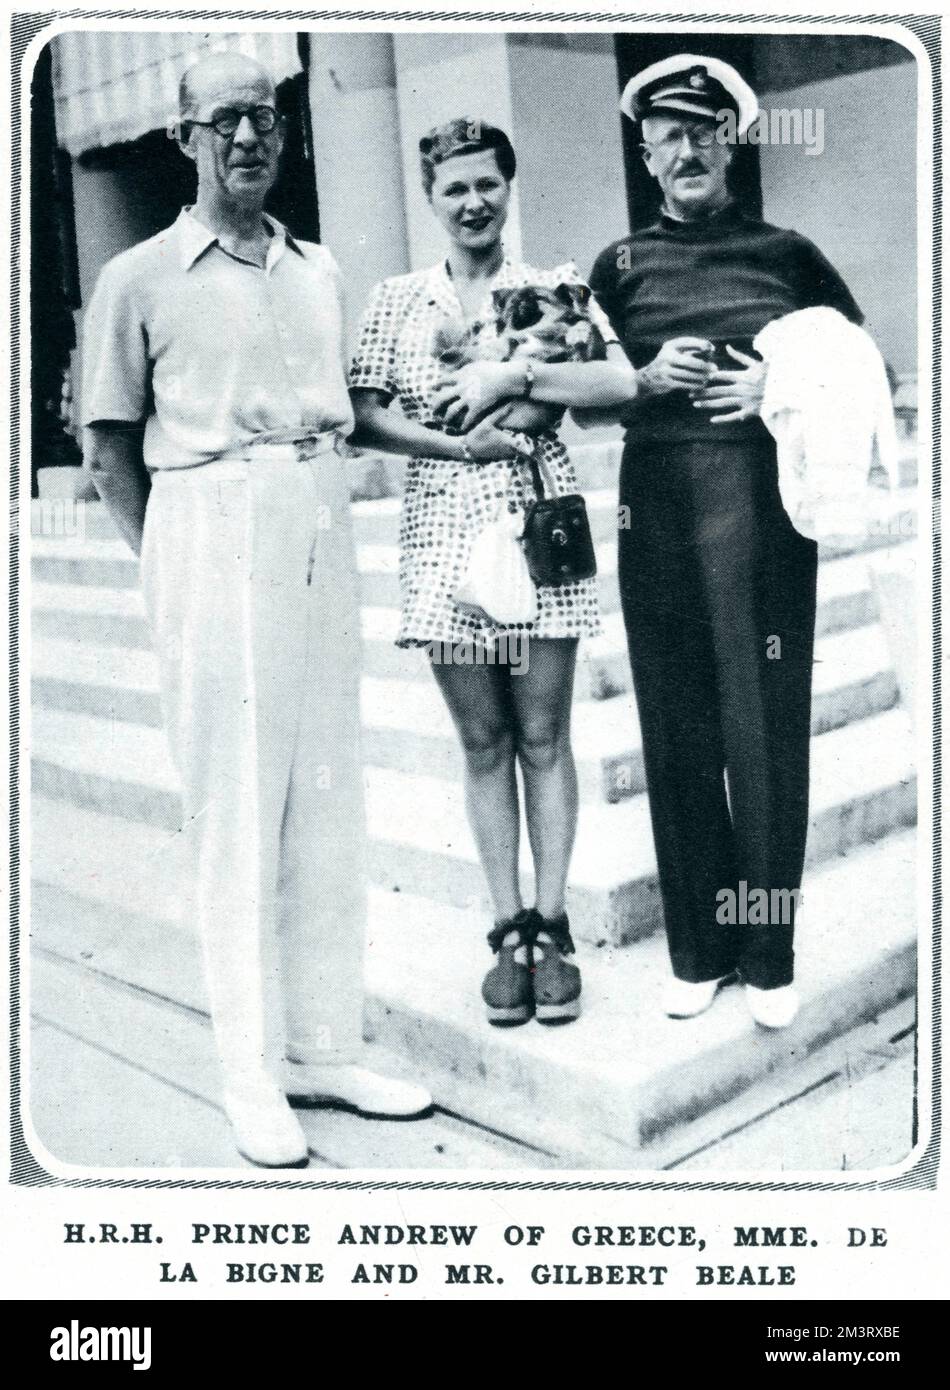 H.R.H. Il principe Andrea di Grecia, padre del principe Filippo, duca di Edimburgo, raffigurato con Mme. Andree de la Bigne e Gilbert Beale. Il principe, che visse sulla Riviera negli ultimi anni quando si separò dalla moglie, la principessa Alice di Battenberg, fu ospite a bordo dello yacht di Gilbert Beale, la Susannah Jane. Andree de la Bigne era la padrona del principe. 1938 Foto Stock